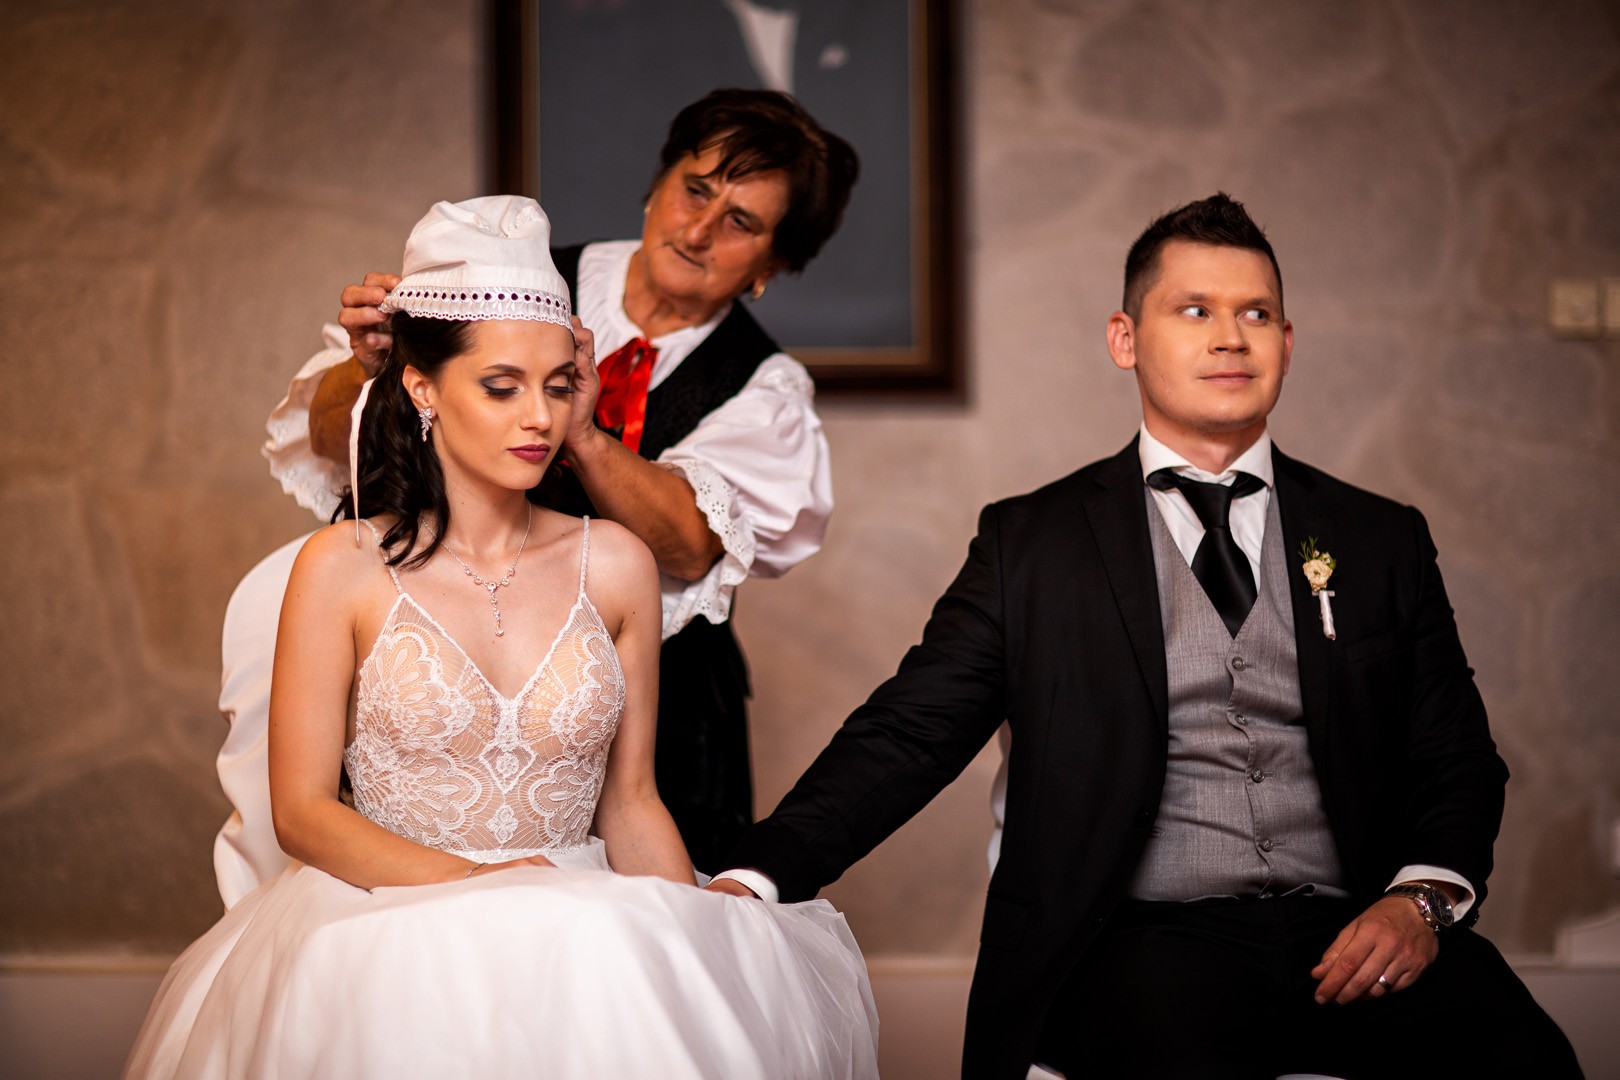 Picturesque dream wedding of Kloudy & Michal in Hluboká nad Vltavou. - 0588.jpg